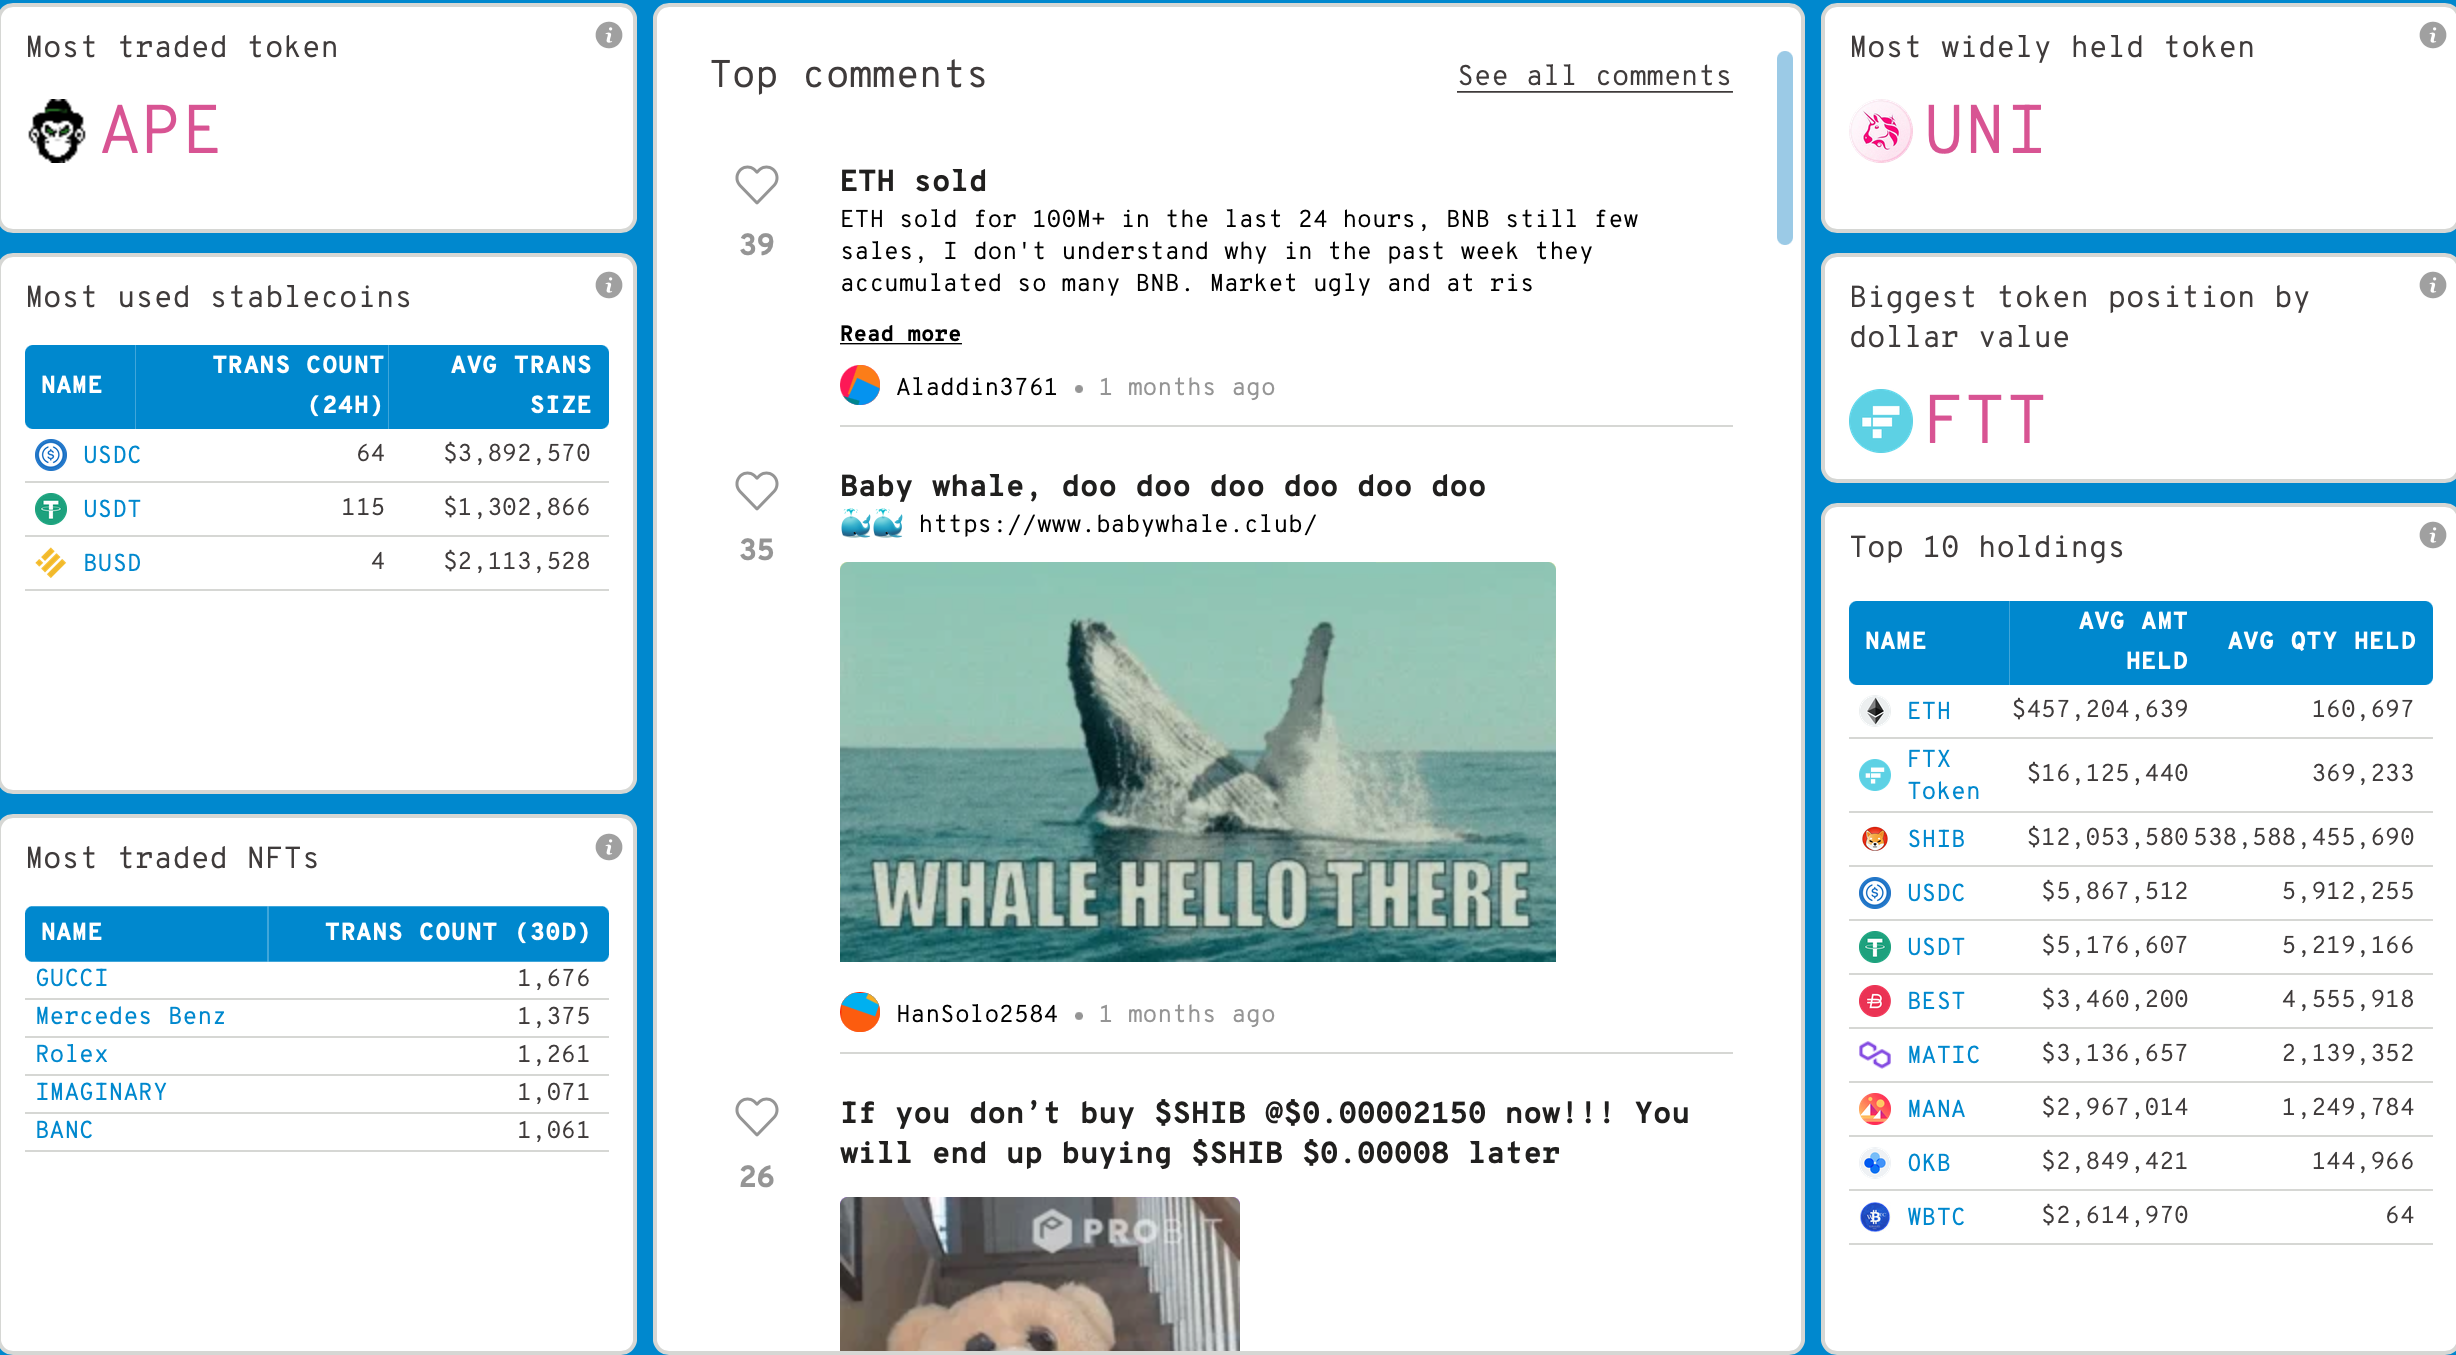 ApeCoin y la historia detrás de convertirse en "la más negociada" entre las ballenas Ethereum